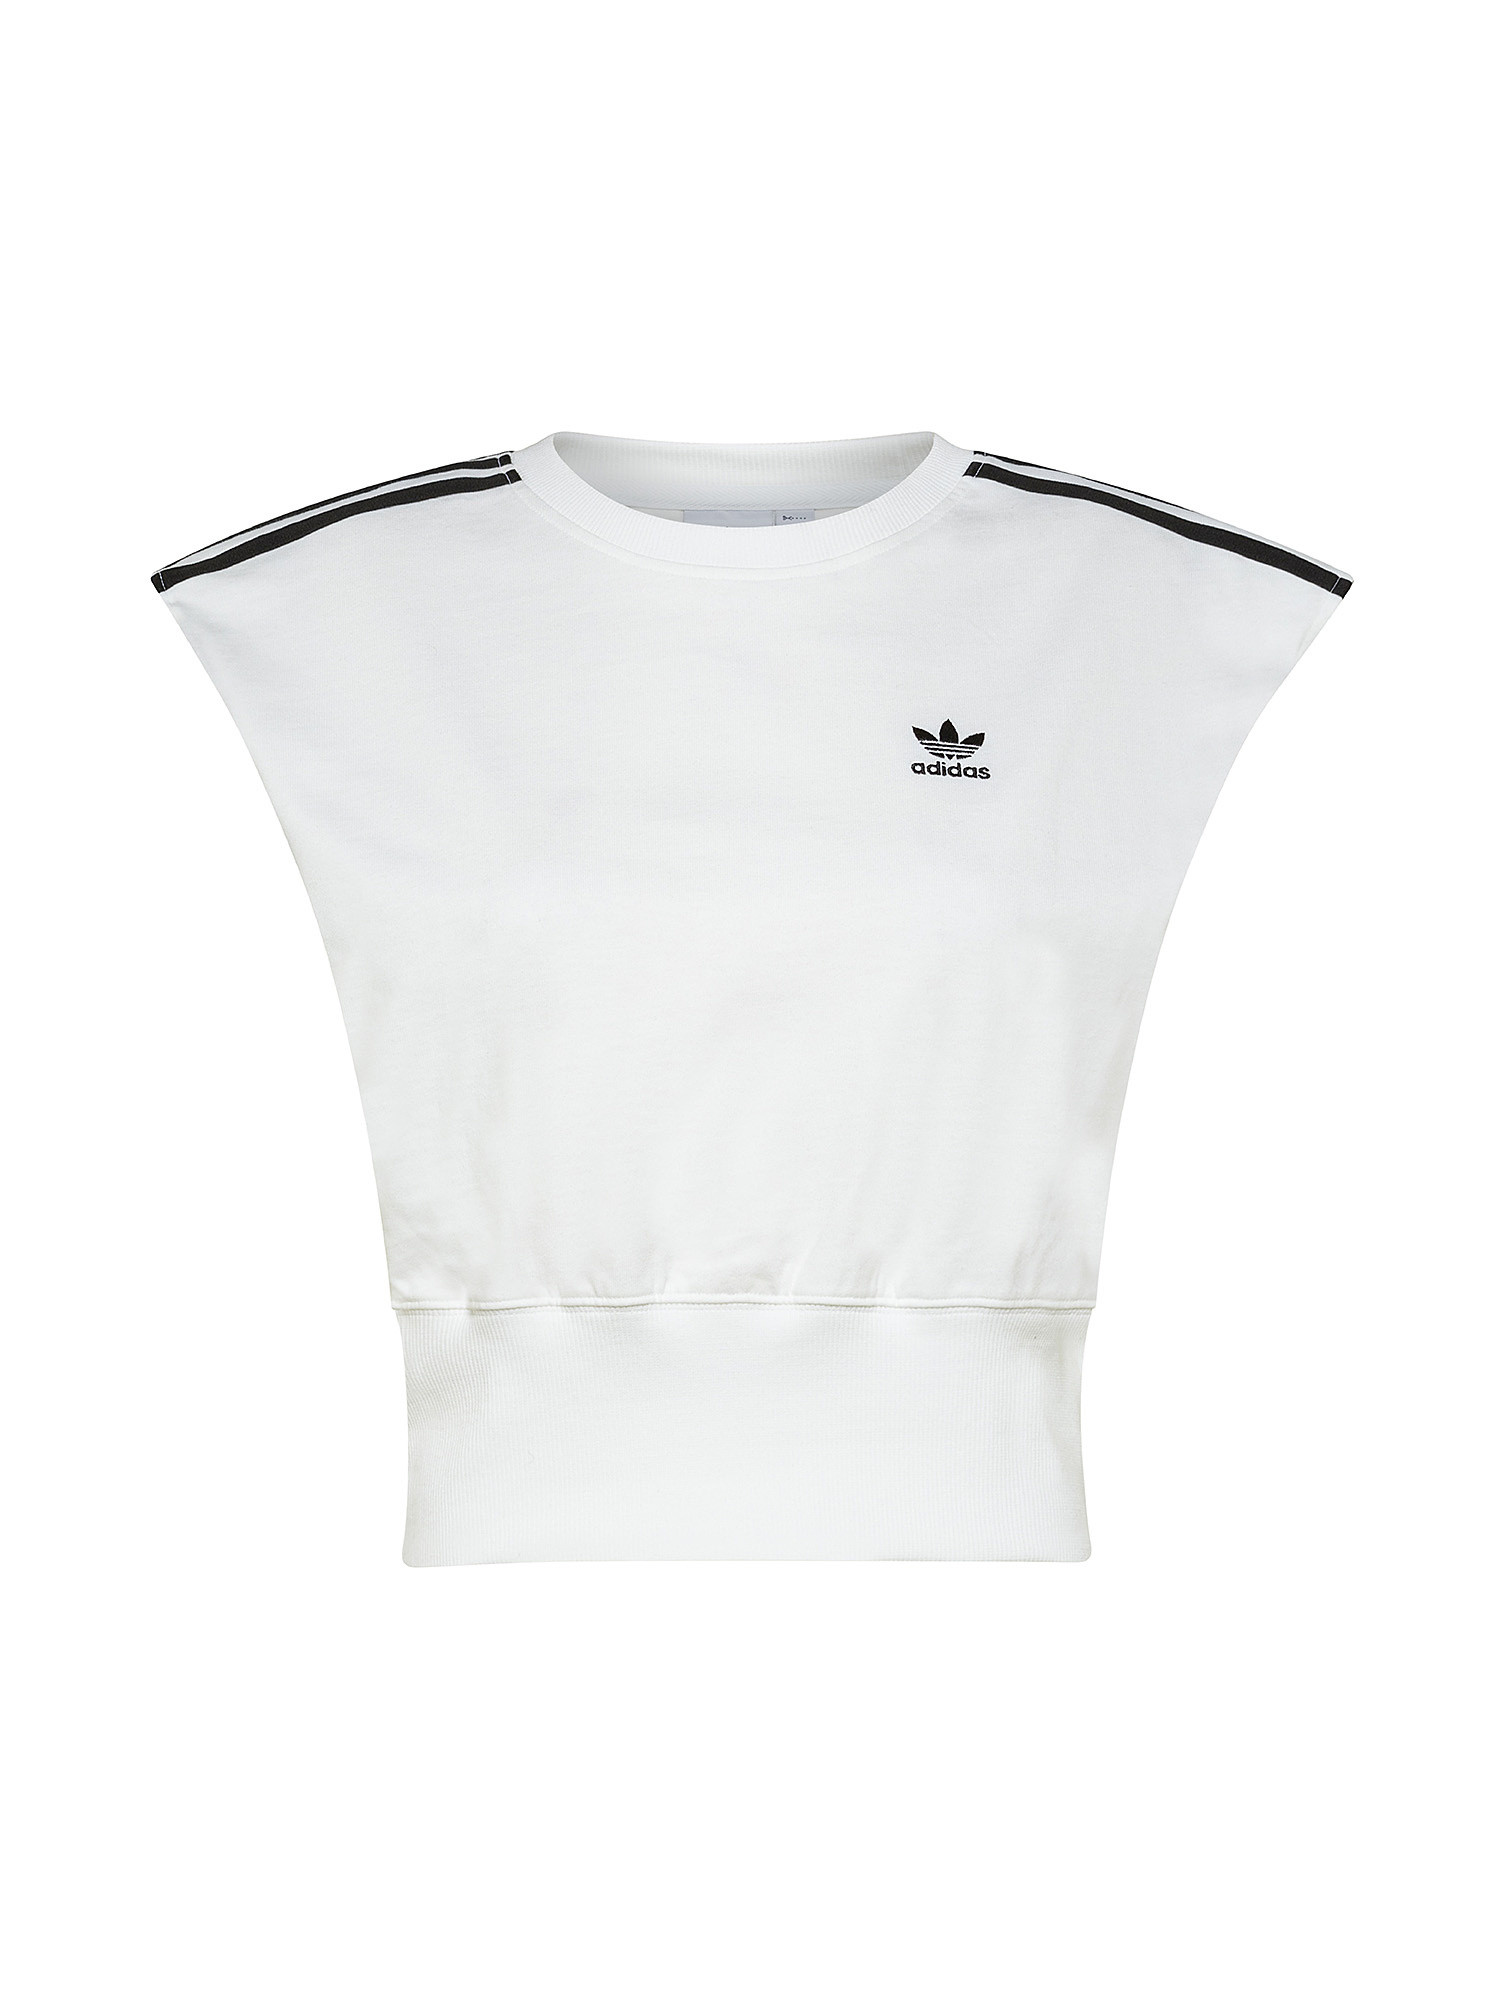 Adidas - T-shirt adicolor con logo, Bianco, large image number 0